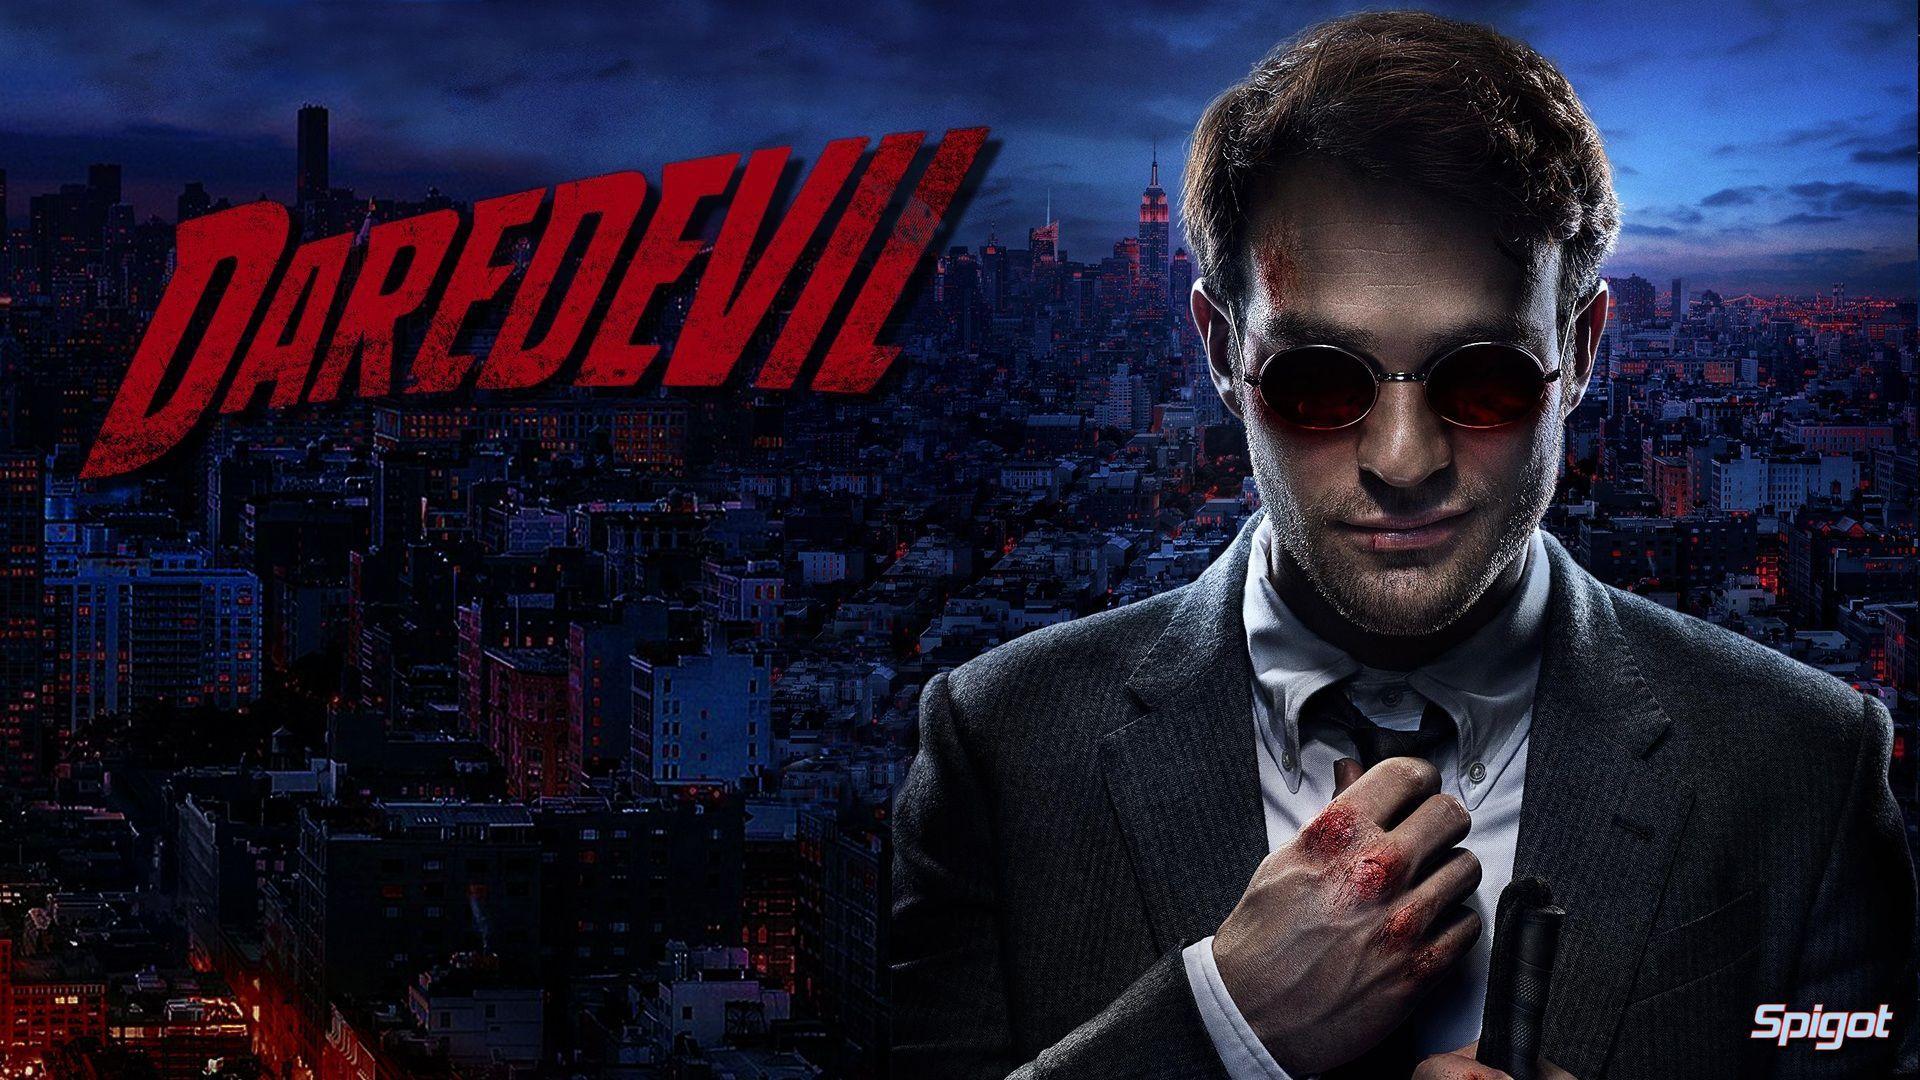 Daredevil Netflix Wallpaper. Daredevil tv, Daredevil netflix, Marvel daredevil